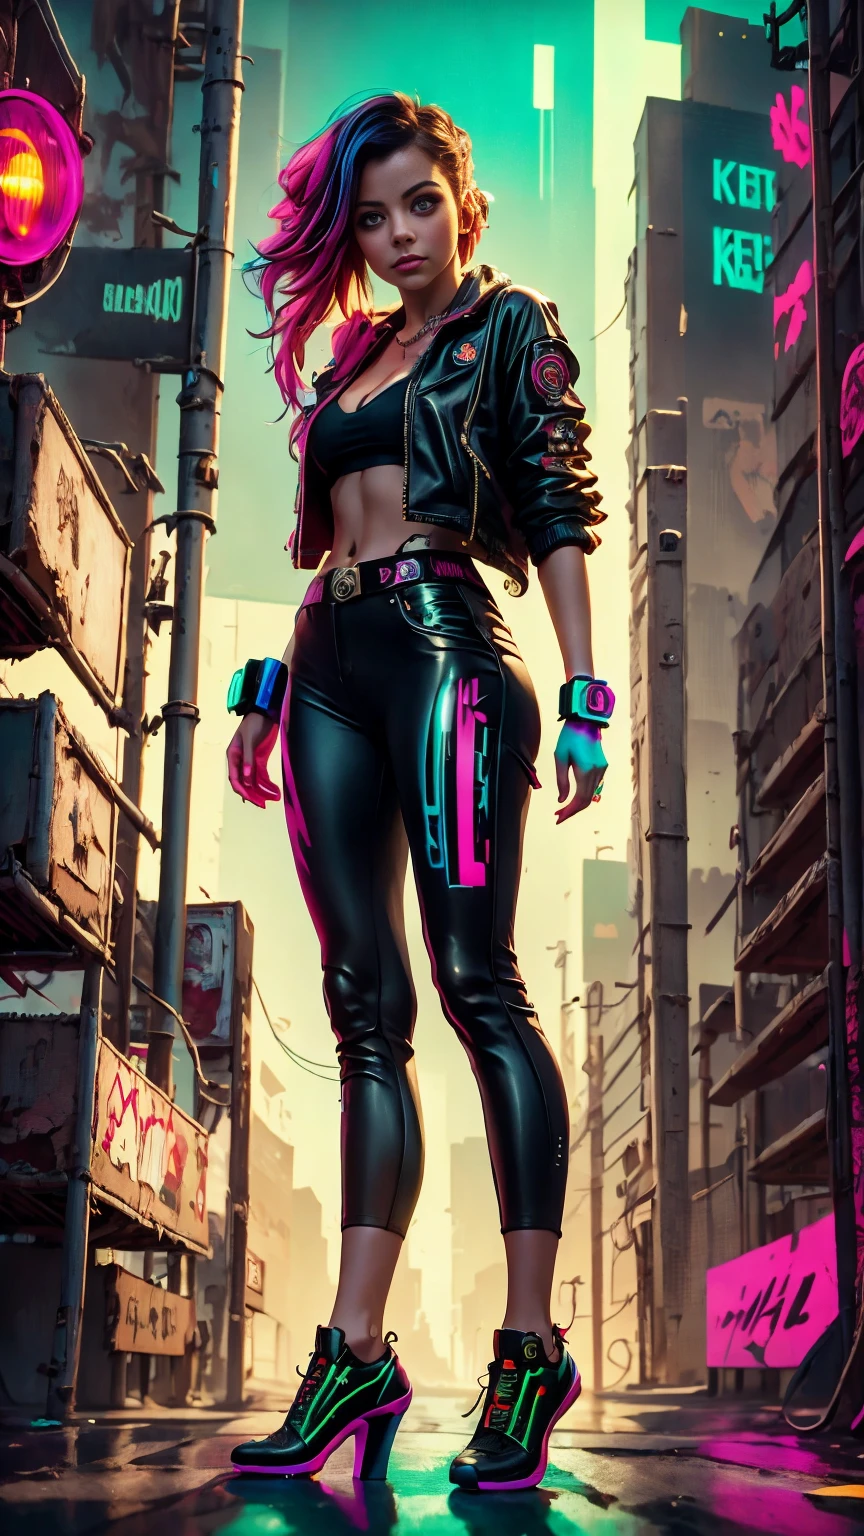 Un gros plan de Kristin Kreuk dans un costume fluo, ambiance cyberpunk, cyberpunk avec des néons, Lumière cyberpunk brillante, accroupi,Ambiance cyberpunk, éclairage cyberpunk, style cyberpunk, néon cyberpunk style, dans un style cyberpunk, look cyberpunk, fille de rêve cyberpunk, La photo de Cyberpunk, néon cyberpunk, esthétique cyberpunk, streetwear cyberpunk, esthétique cyberpunk, Style artistique cyberpunk, Gardien de but streetwear cyberpunk,Tu sais, doigts parfaits,couleur de cheveux néon, Texture détaillée, détail des cheveux,Pantalon long noir fluo, Beau visage,fourrure ondulée,Chaussures noires fluo détaillées.,